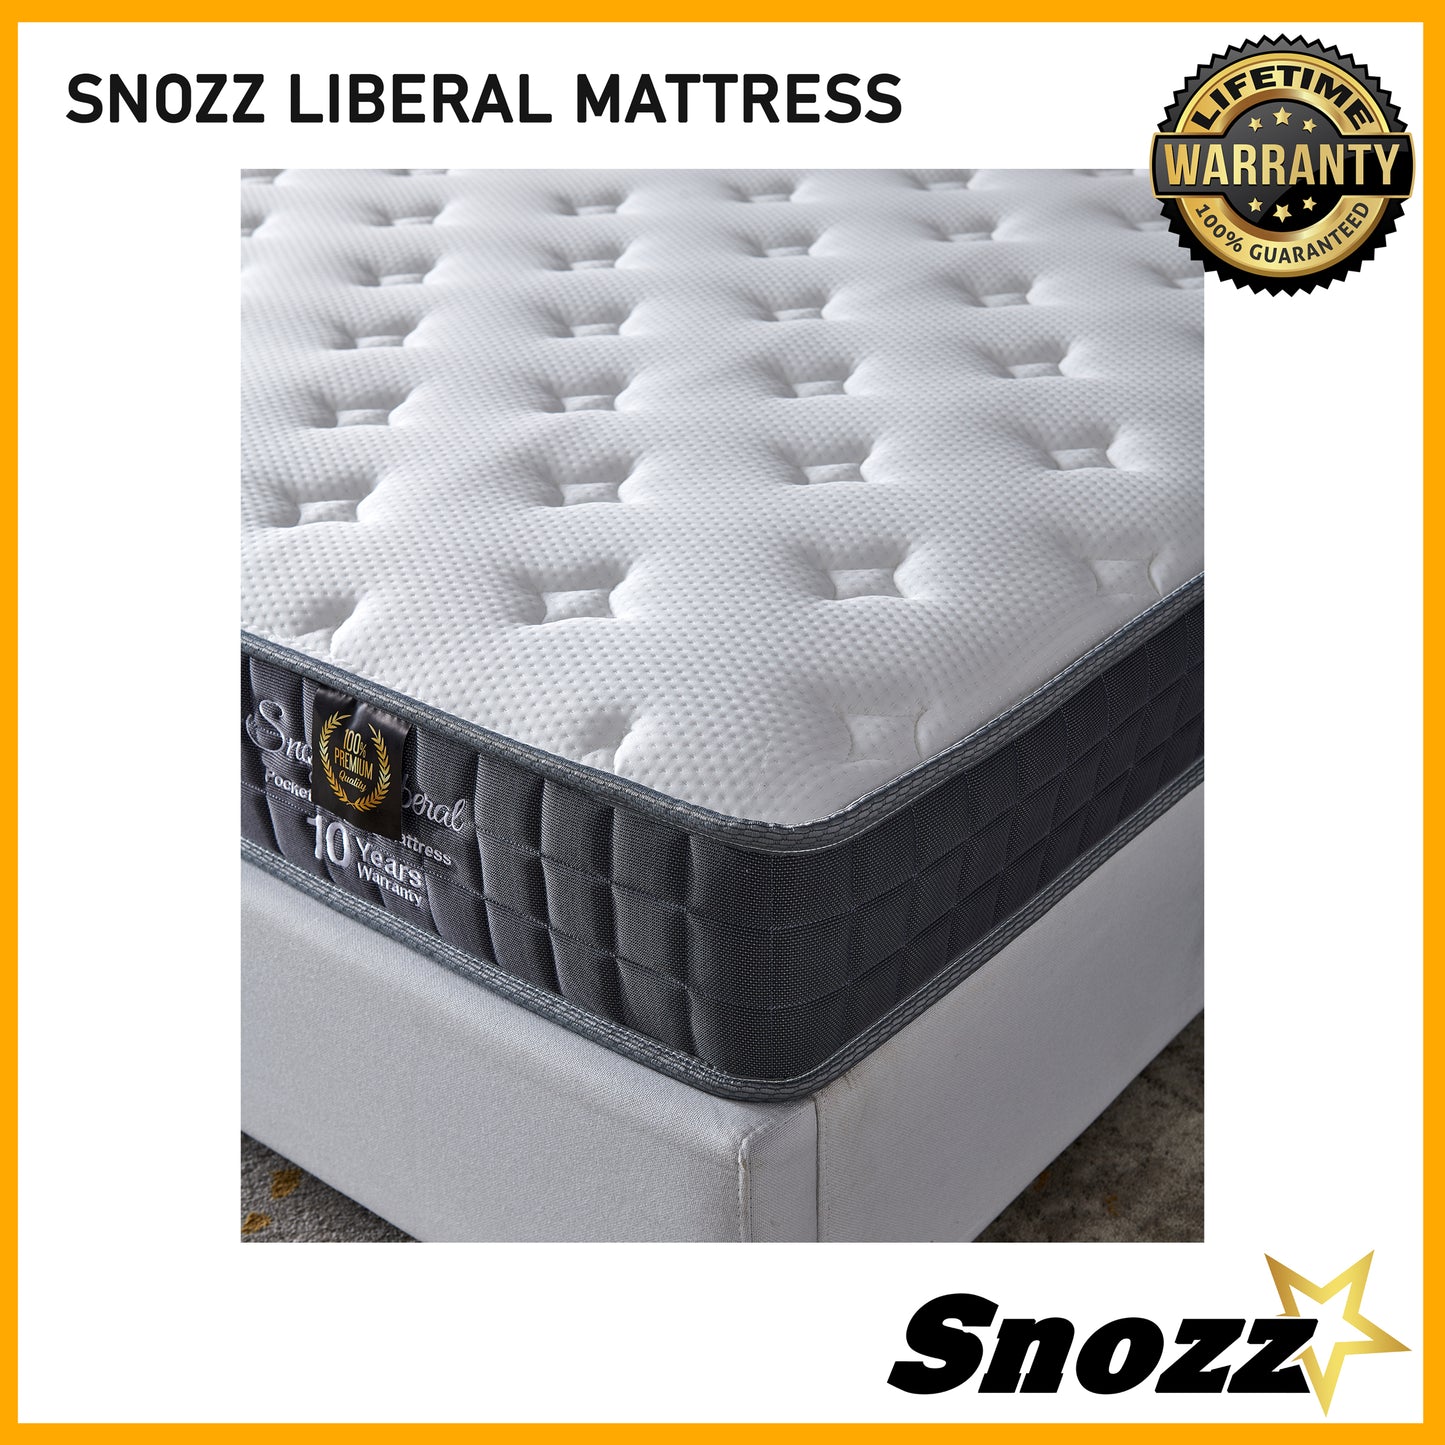 Snozz Spring Mattress | Liberal